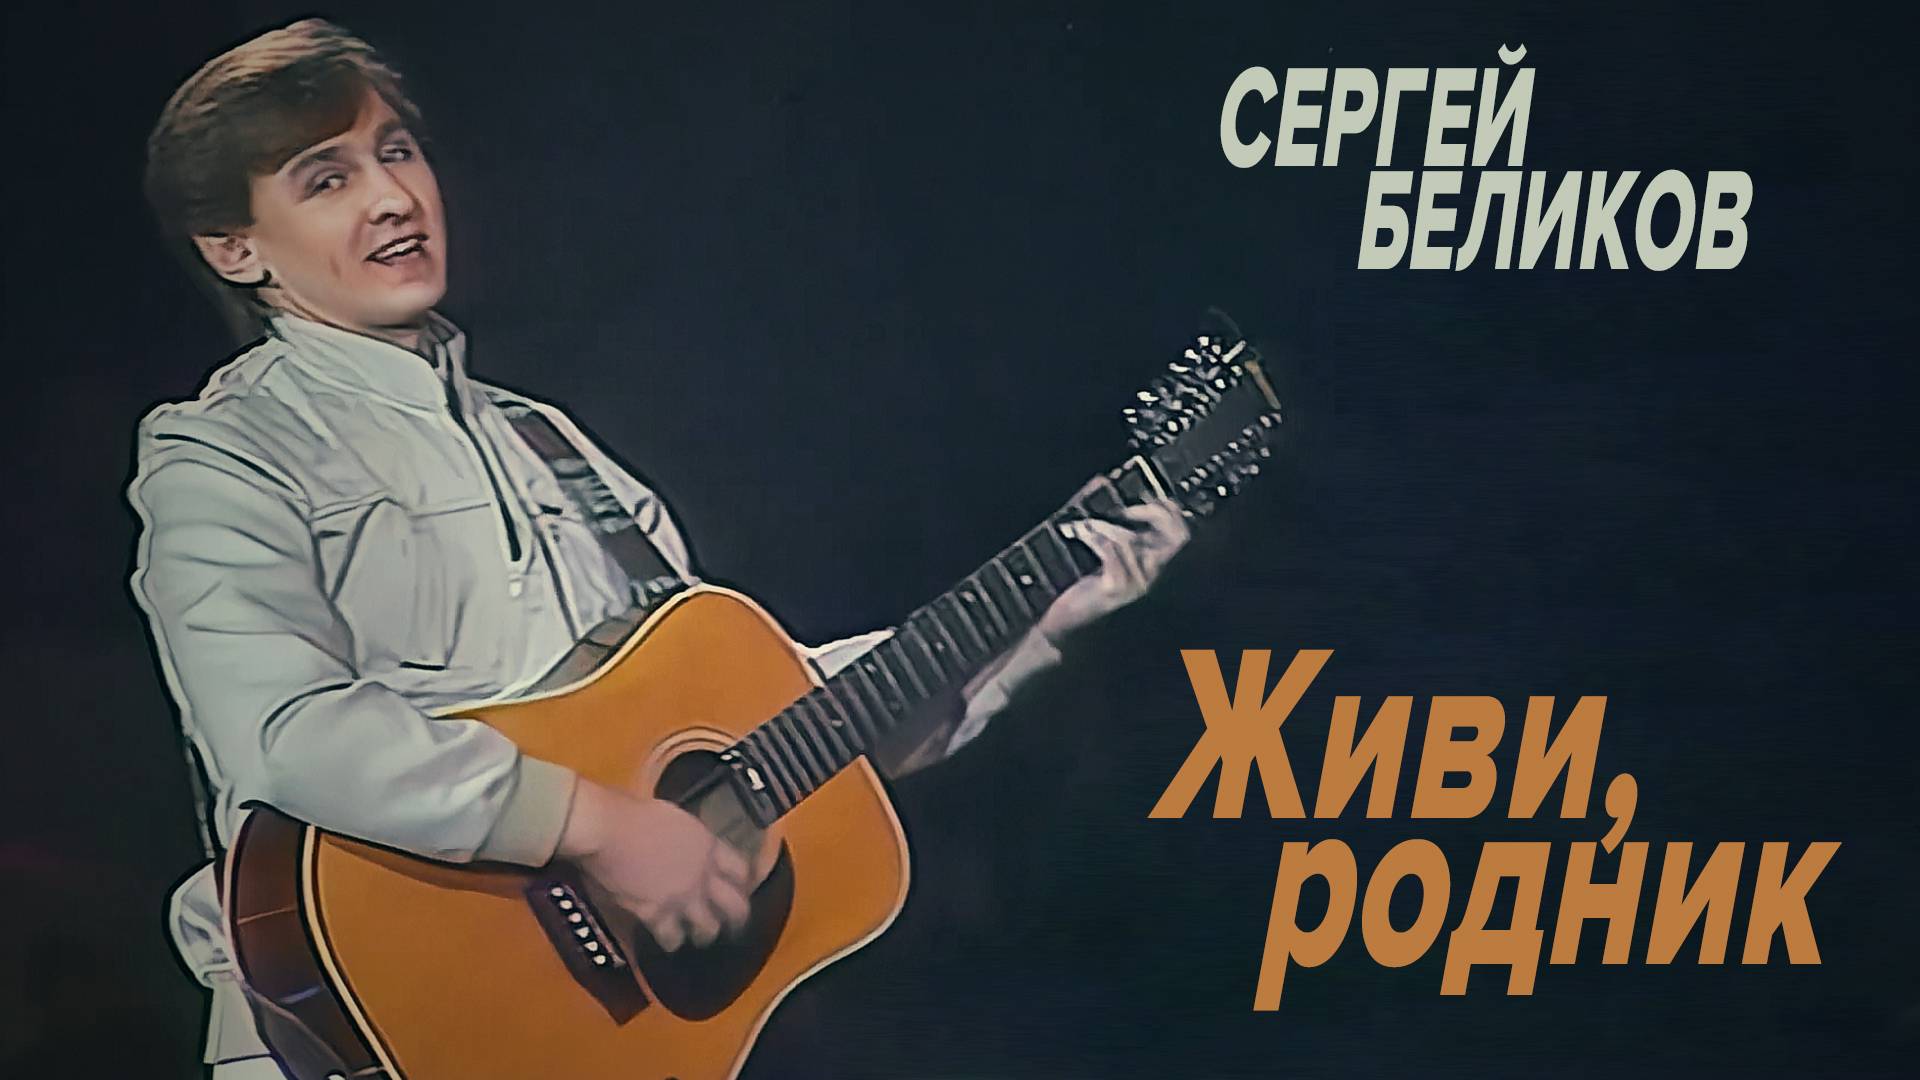 Сергей Беликов - Живи, родник